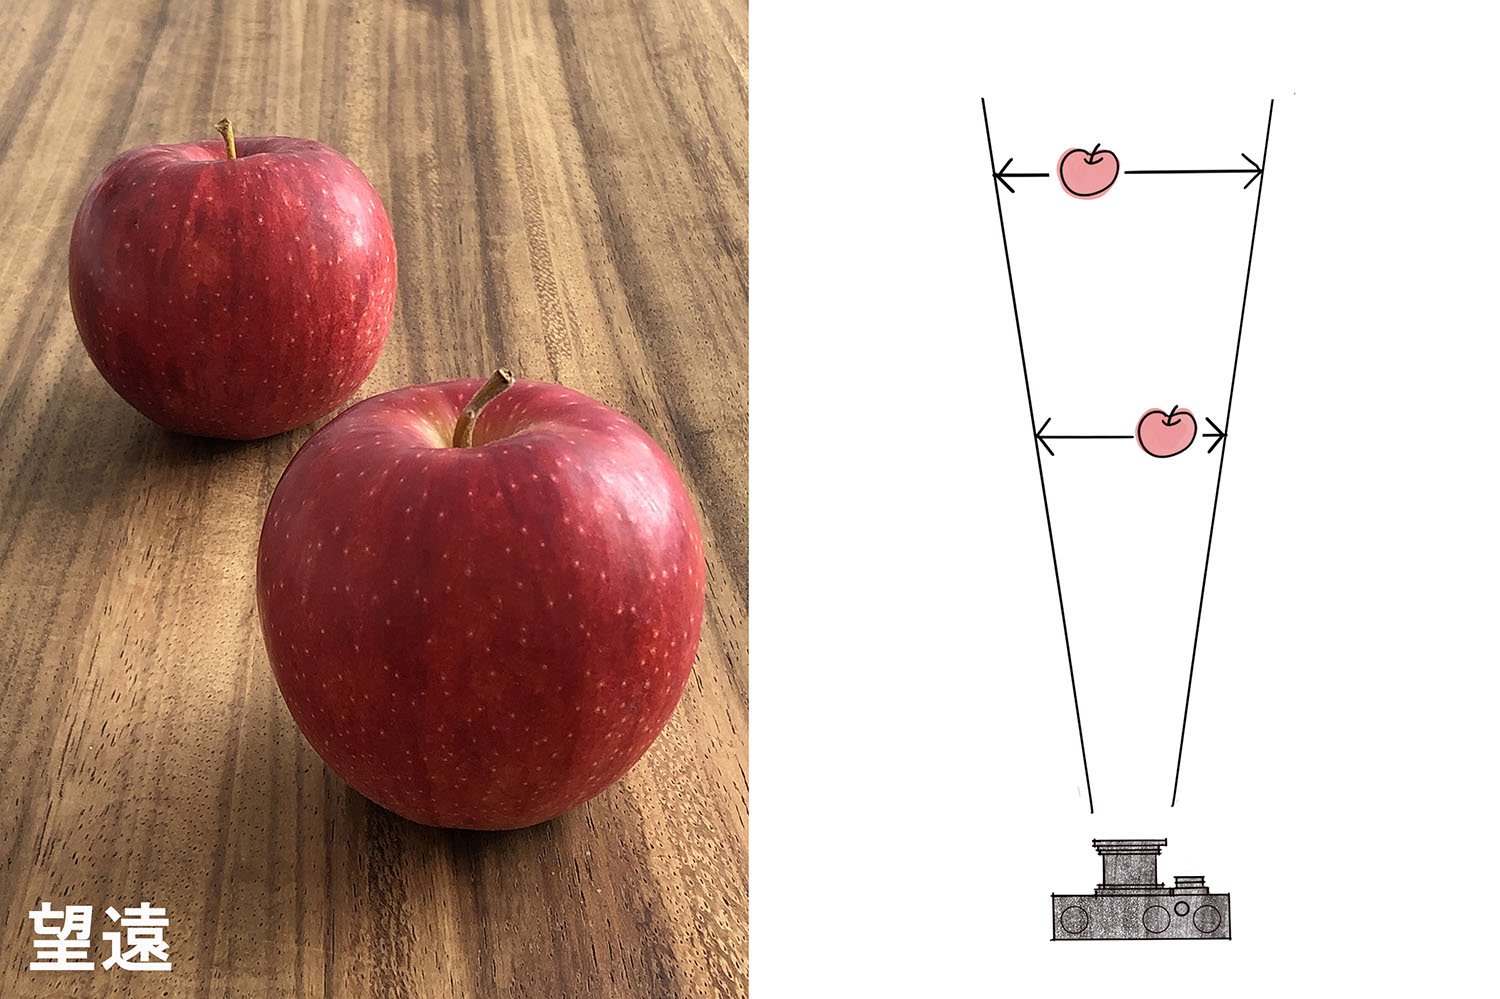 望遠で撮った例。遠近感が強調されないので広角で撮った時よりも奥のリンゴが大きく見える。